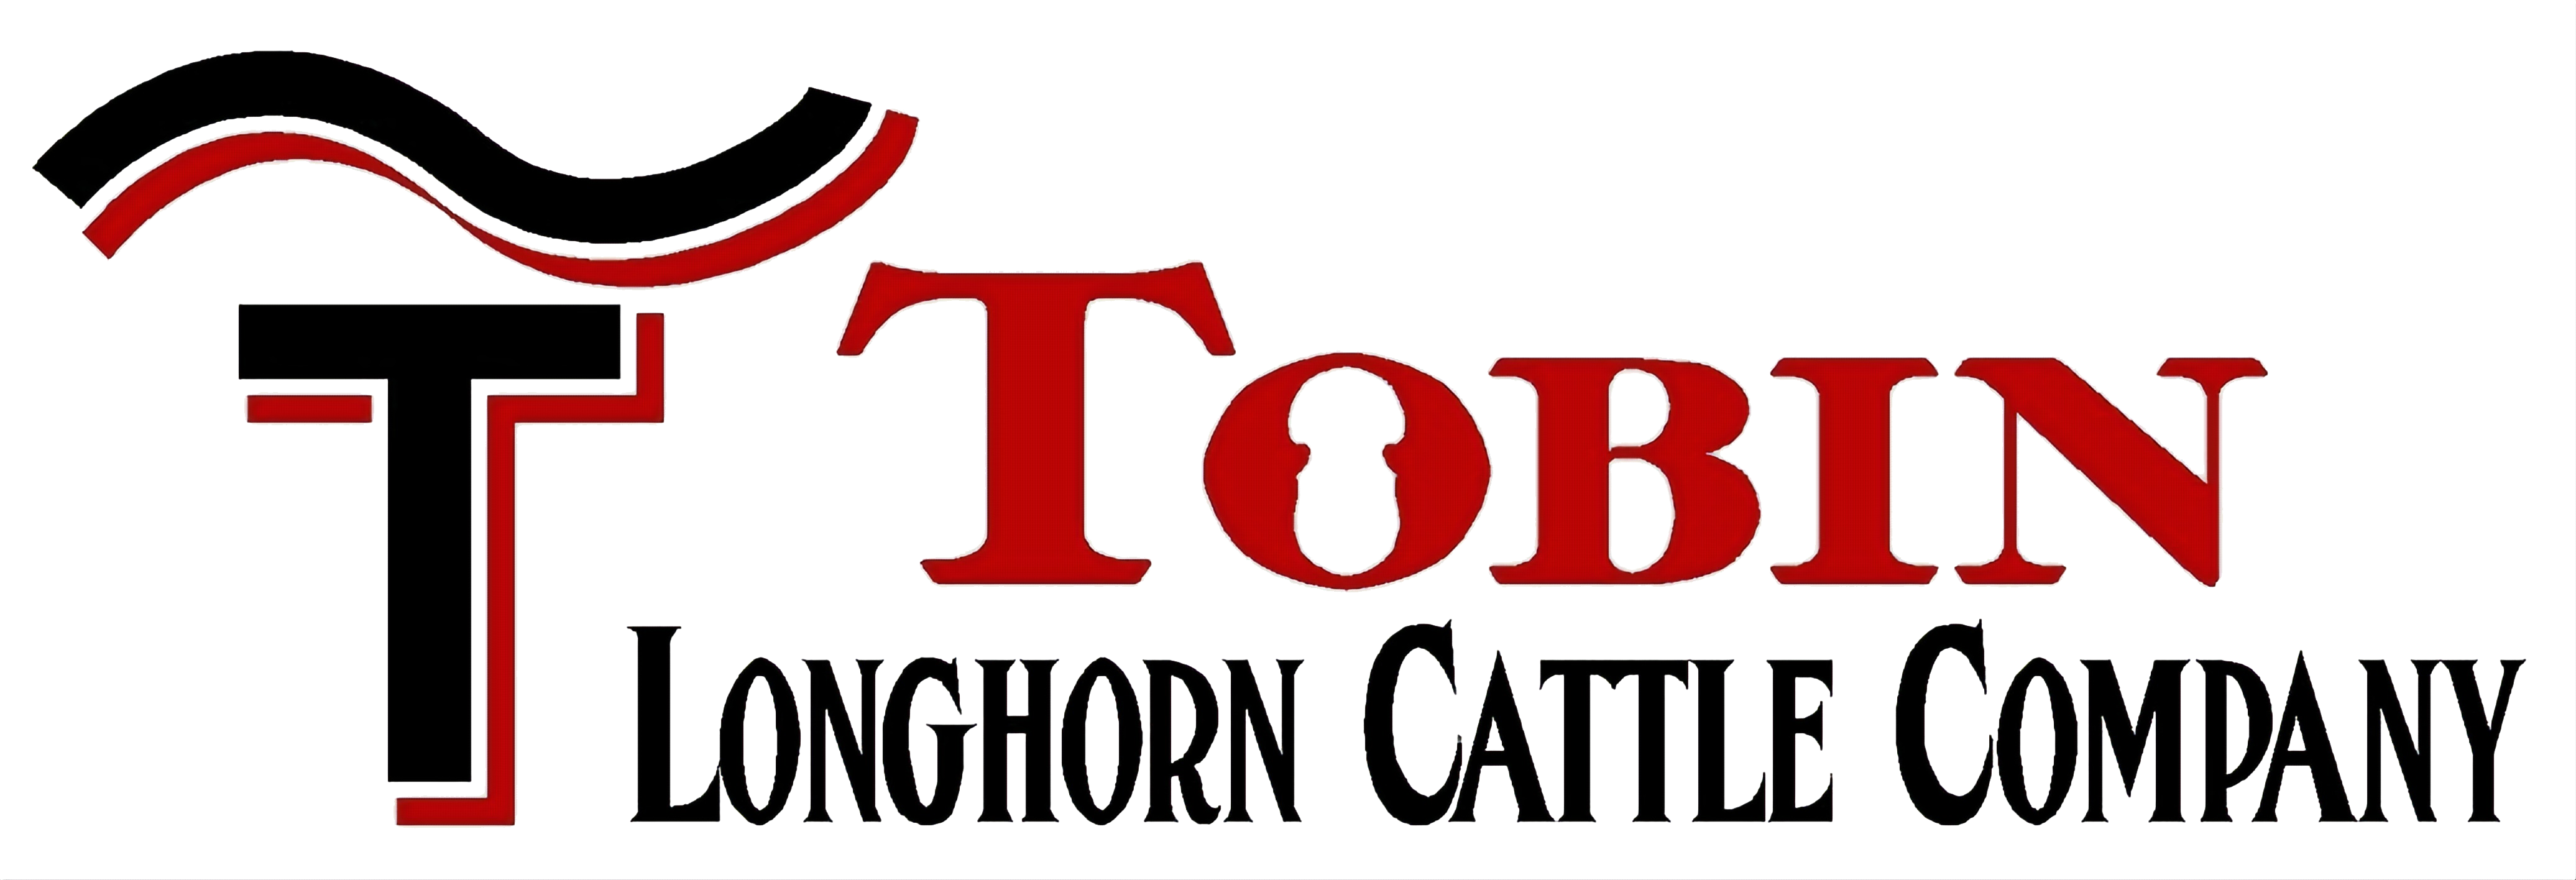 Tobin Longhorn Cattle Company logo